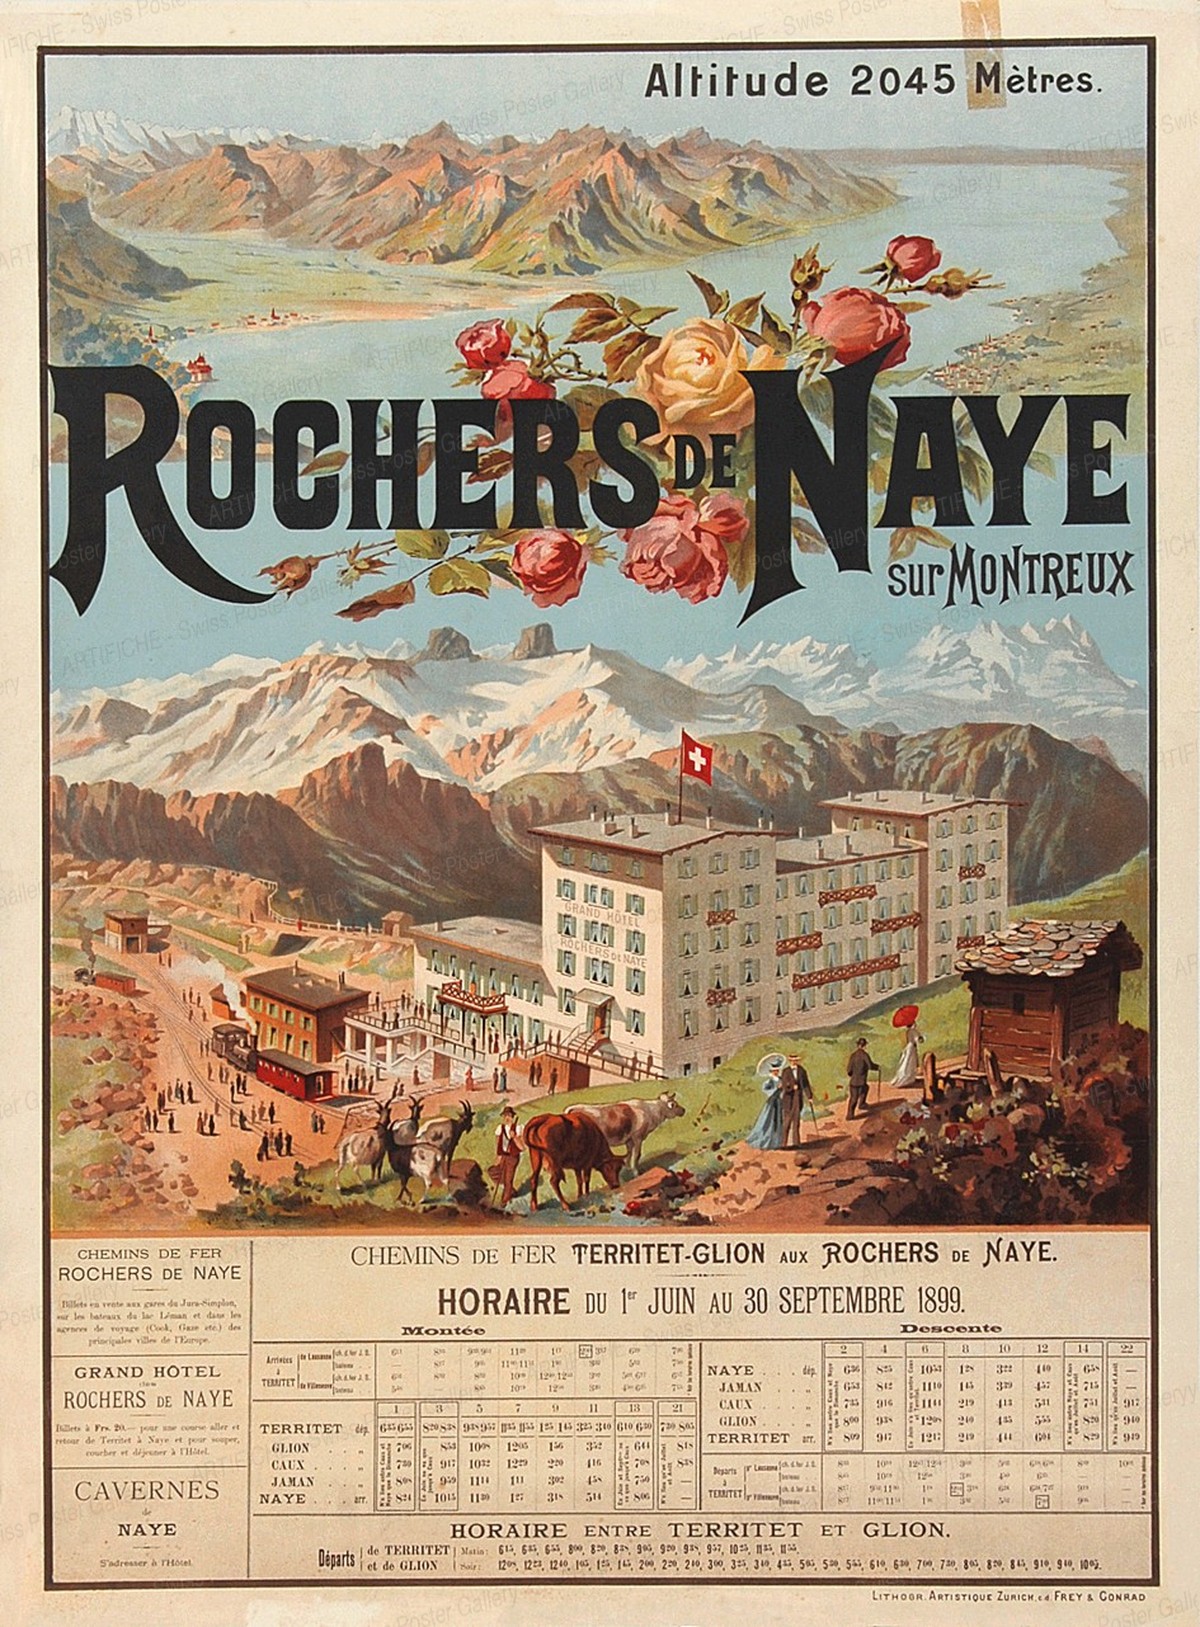 ROCHERS DE NAYE – sur Montreux – Altitude 2045 Mètres, Anton Reckziegel